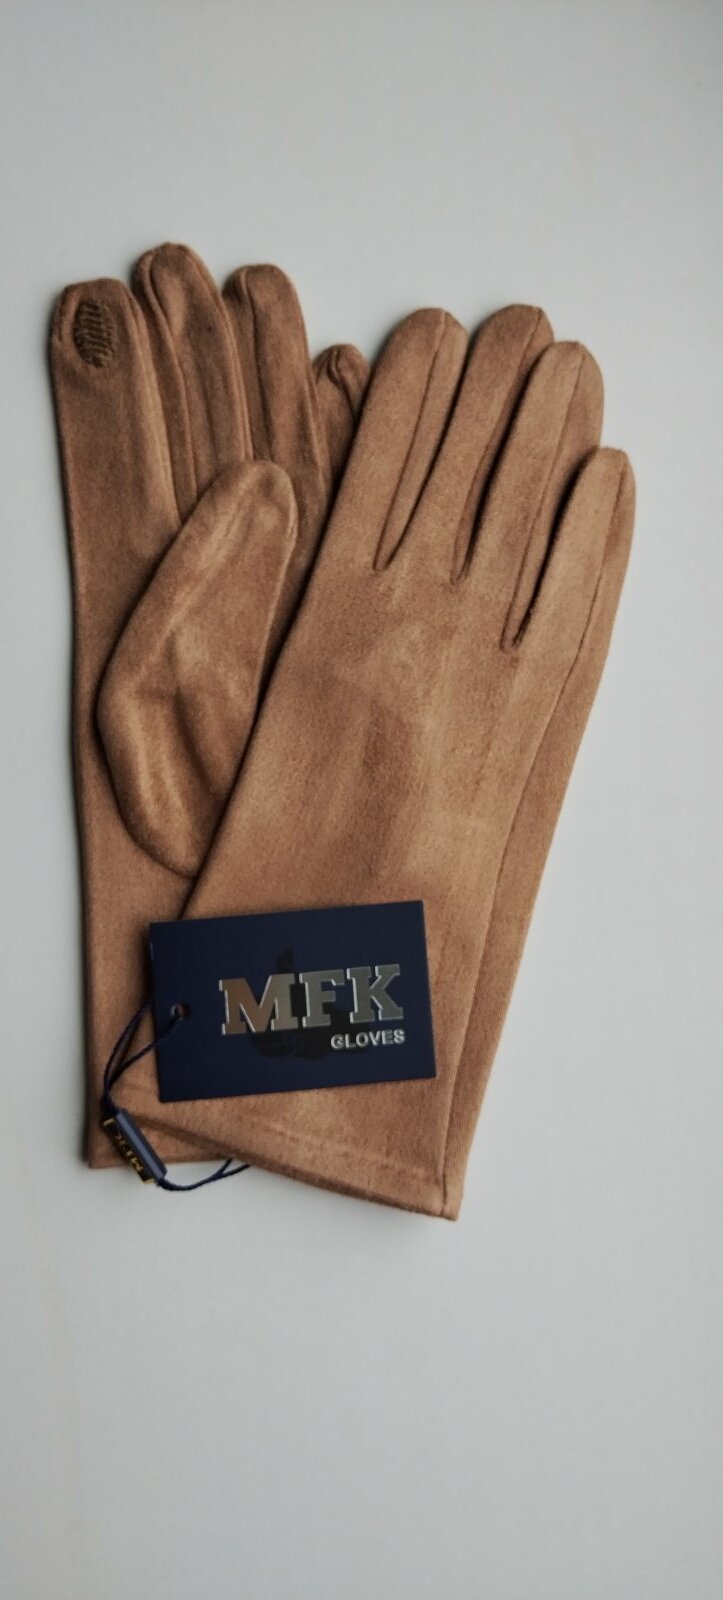 Перчатки MFK